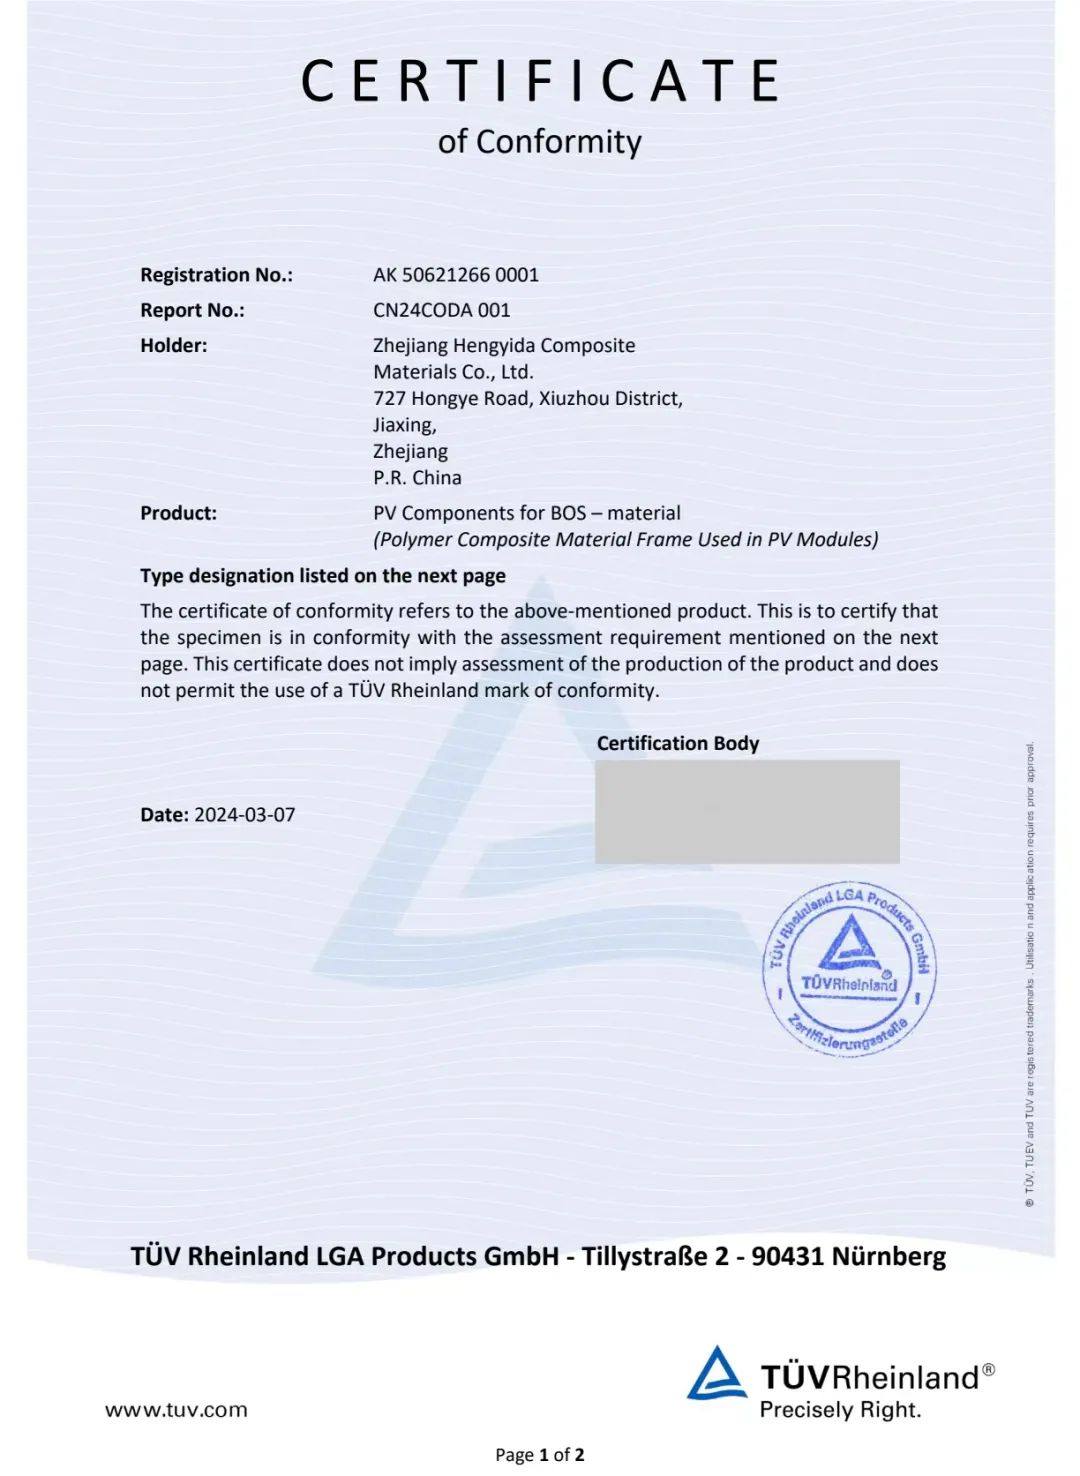 创曦新材、恒亿达获得TÜV莱茵光伏组件用复合材料边框产品认证证书